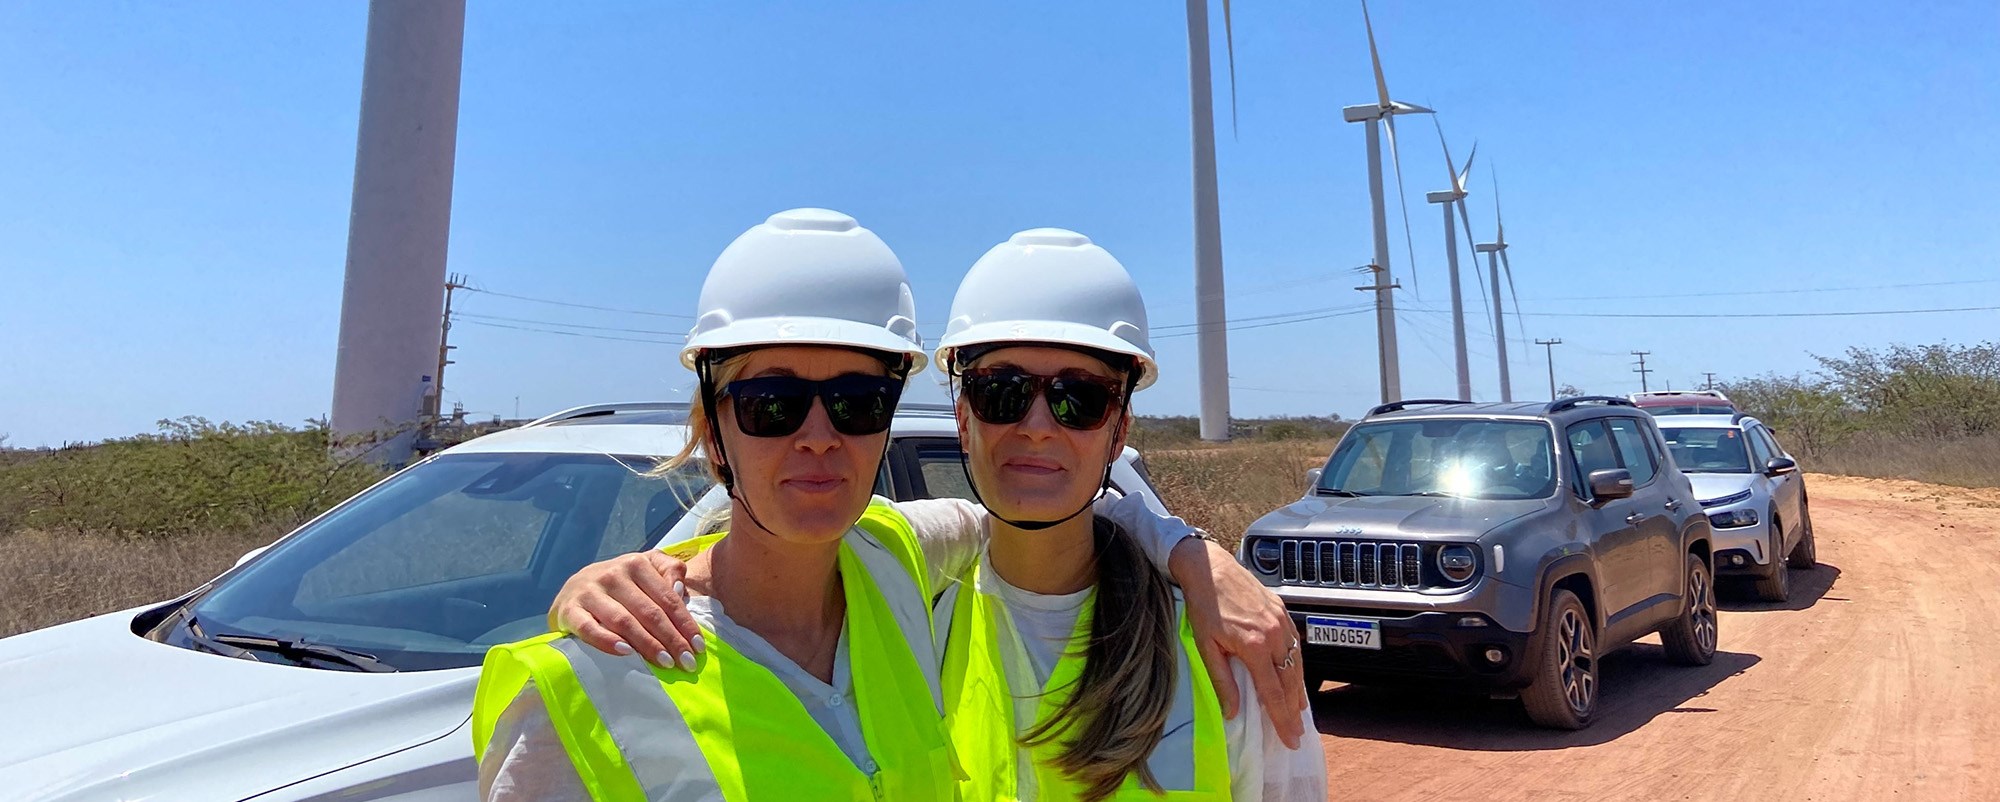 iken Moe og  Ingrid Saunes fra Hydro ved vindturbiner i Brasil.